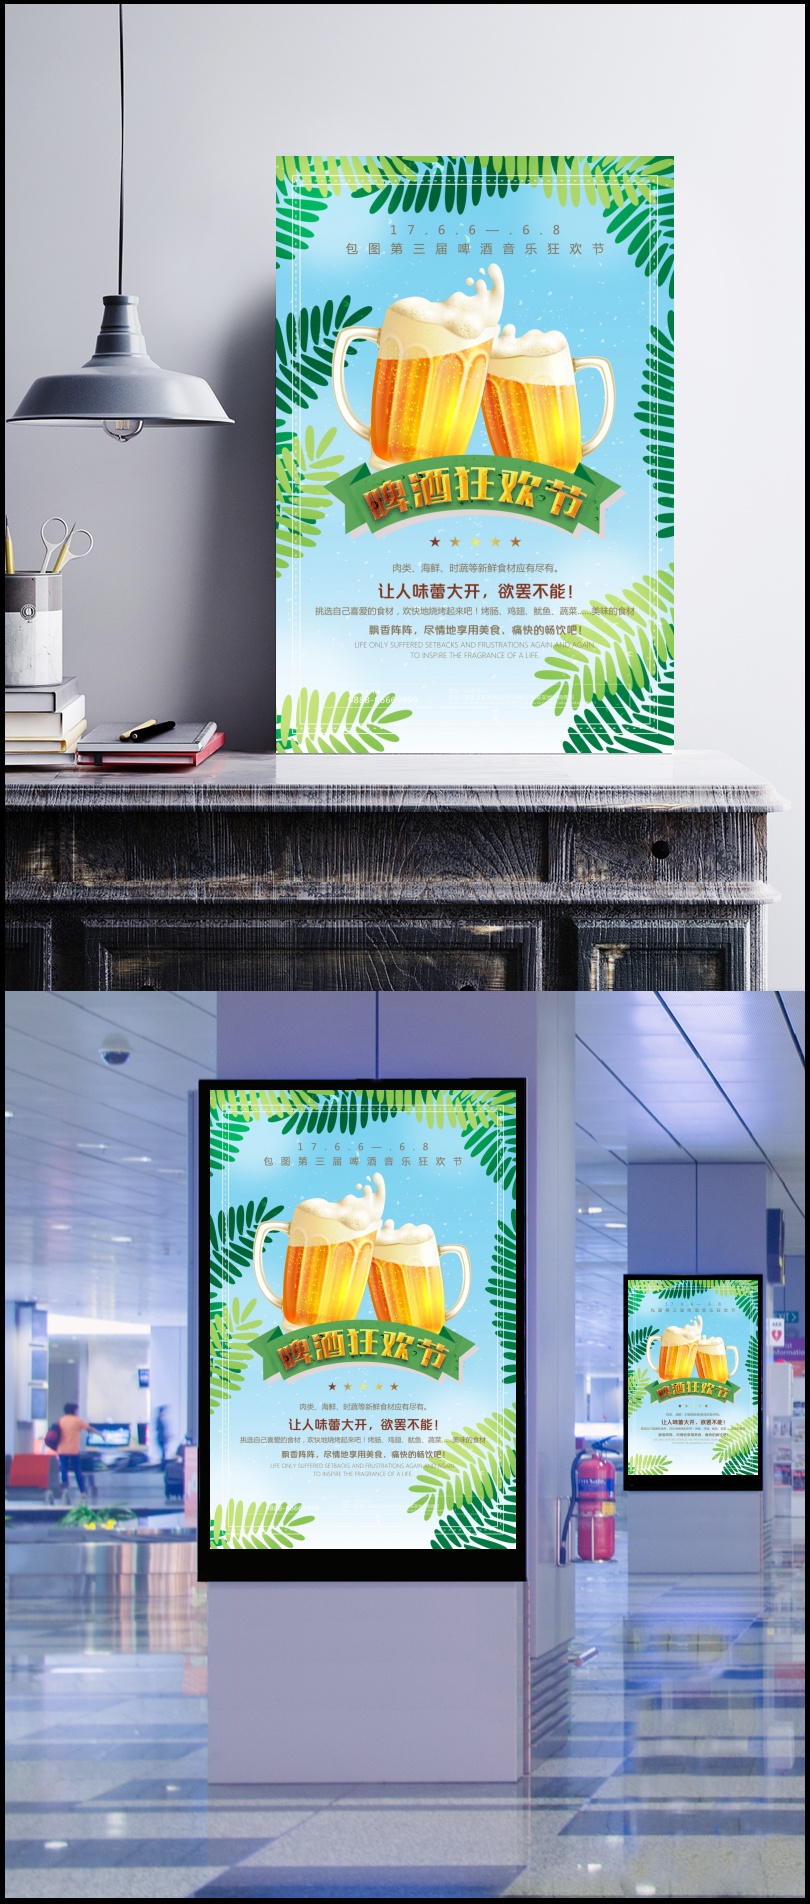 夏天激情狂欢啤酒节宣传海报背景素材